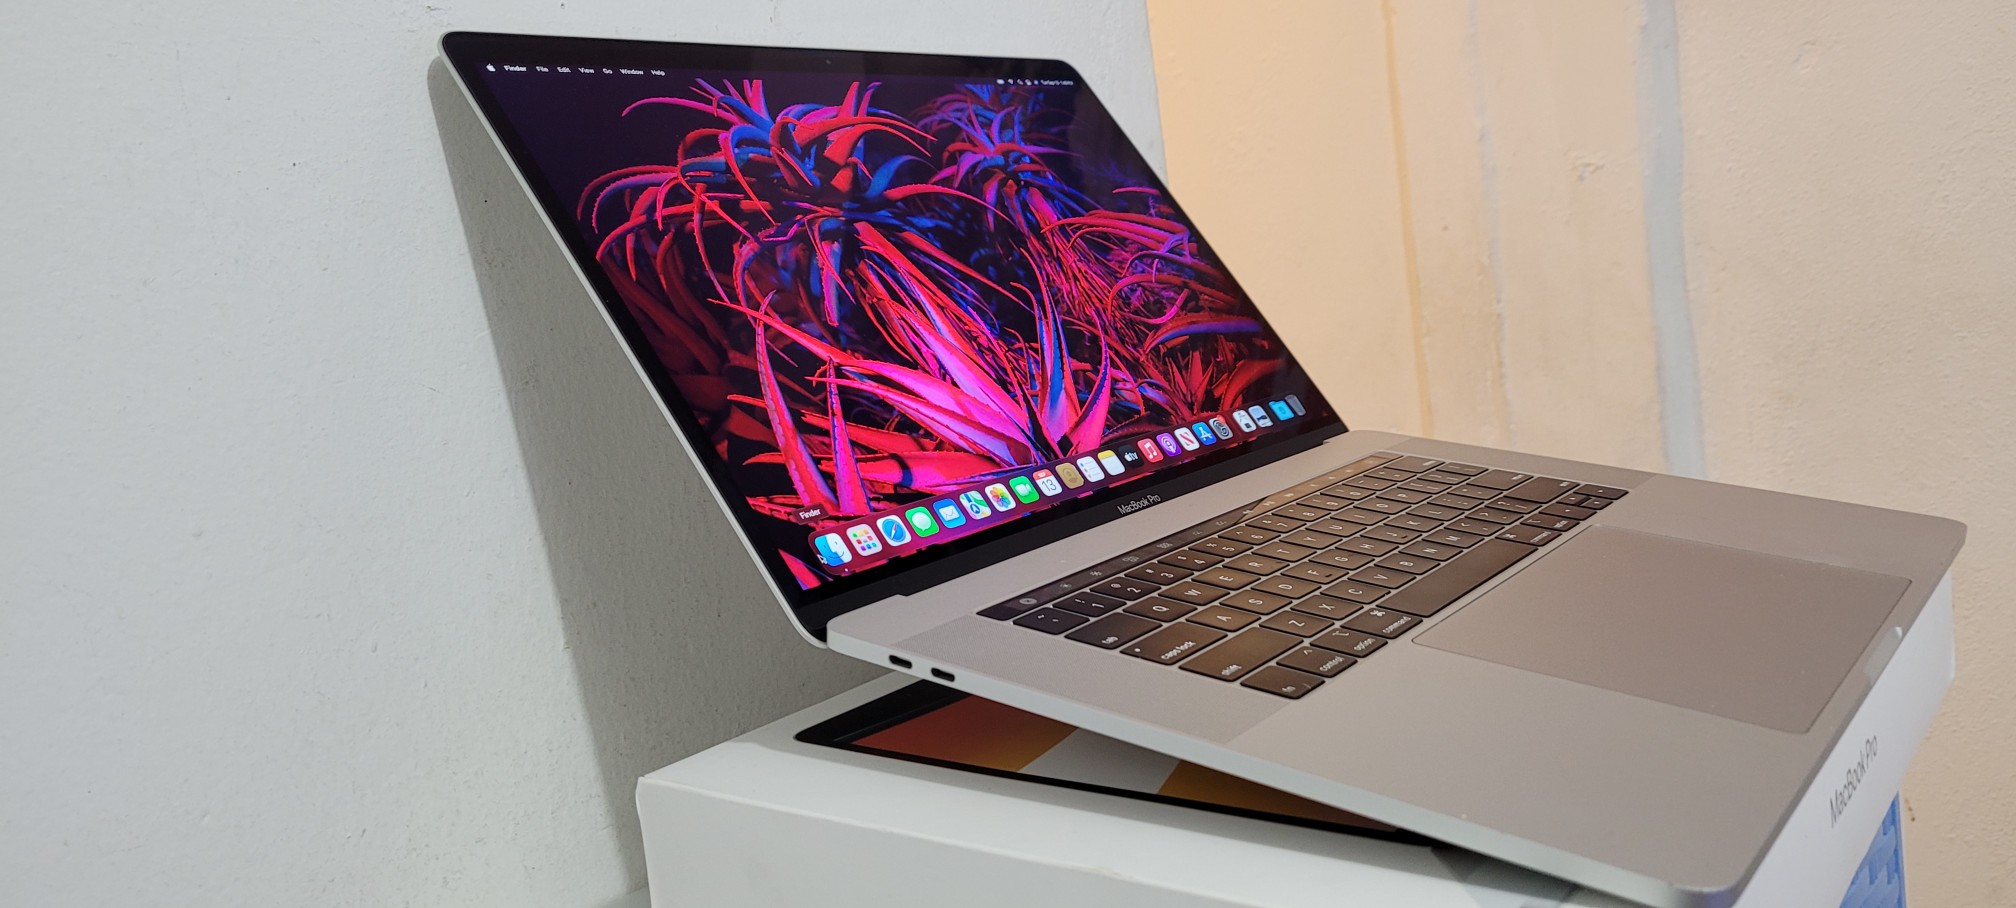 computadoras y laptops - Macbook Pro 15.4 Pulg Core i7 Ram 16gb Disco 256gb Año 2018 Doble Video Graphics 1